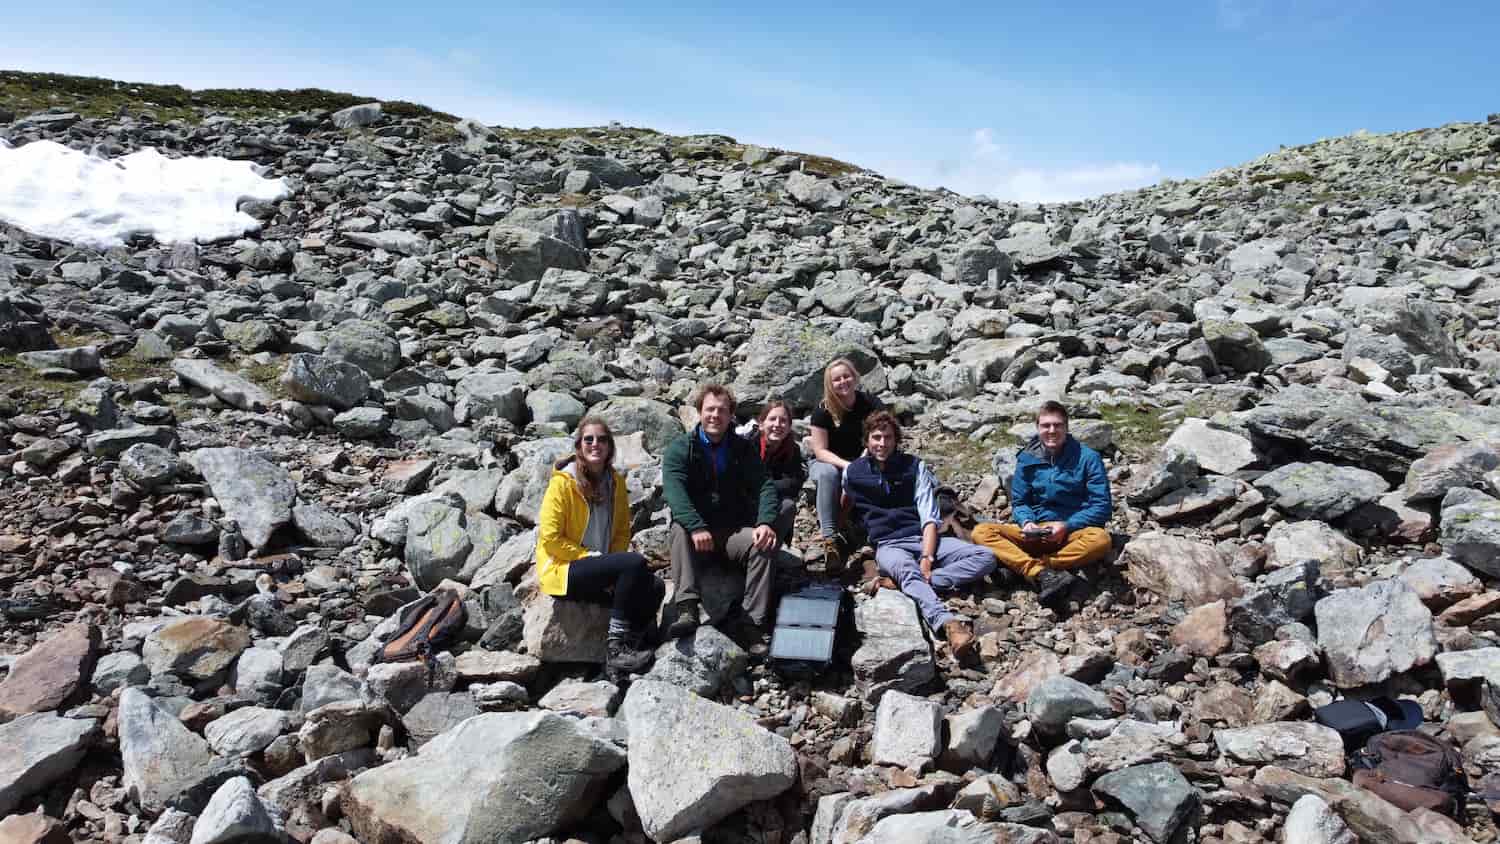 Gruppenfoto von Touristen auf einem sonnigen felsigen Berg mit wandernden Sonnenkollektoren